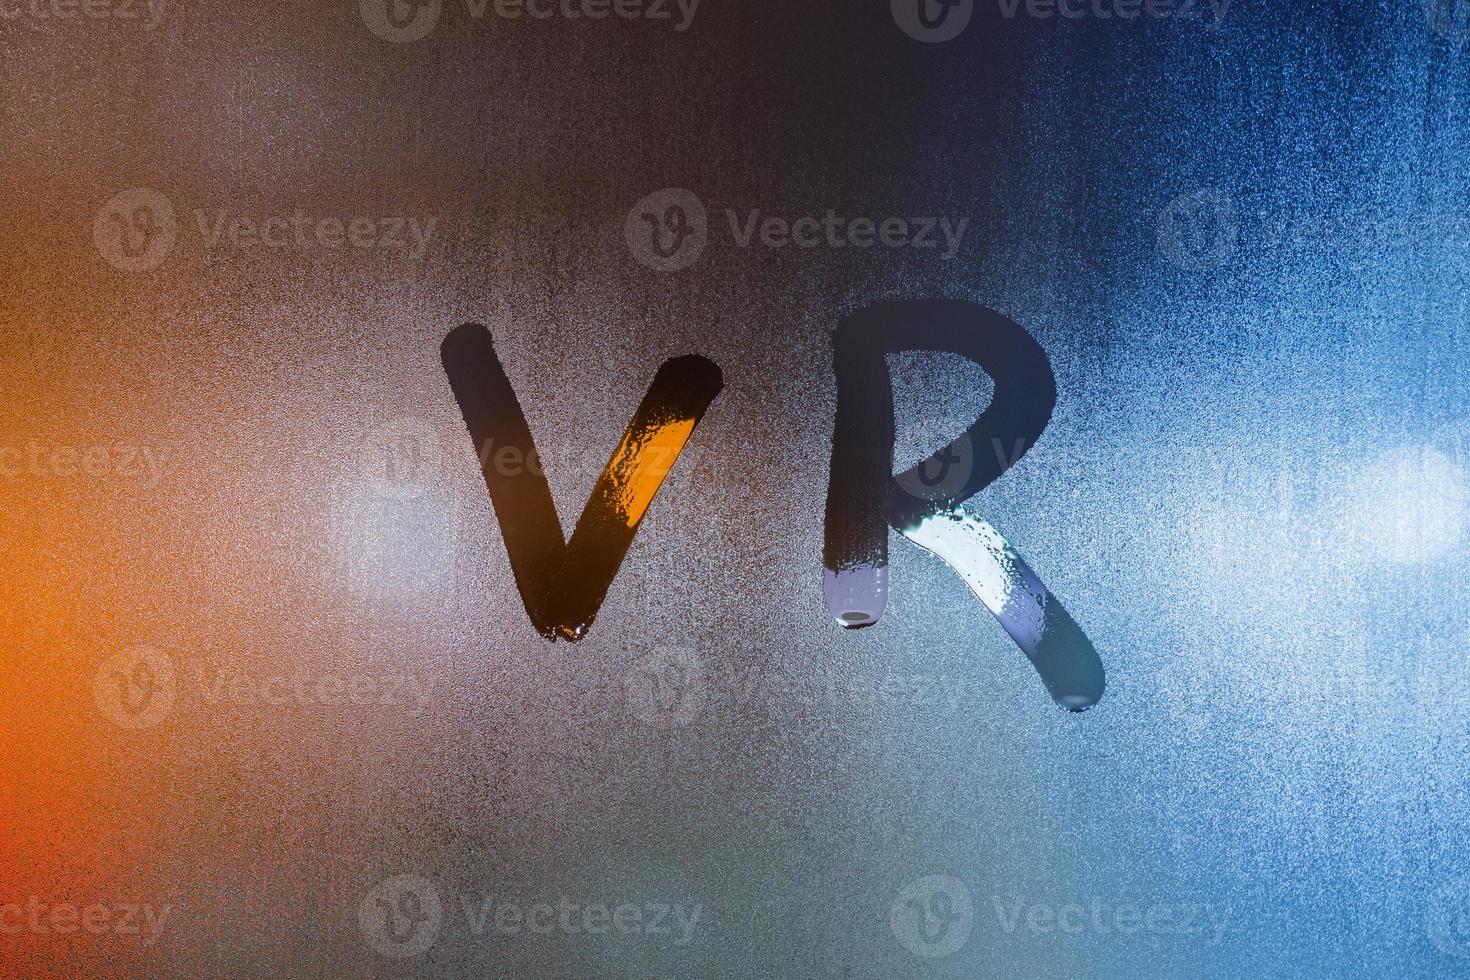 de ord vr - virtuell verklighet - skriven förbi finger på våt glas med suddig lampor i bakgrund foto